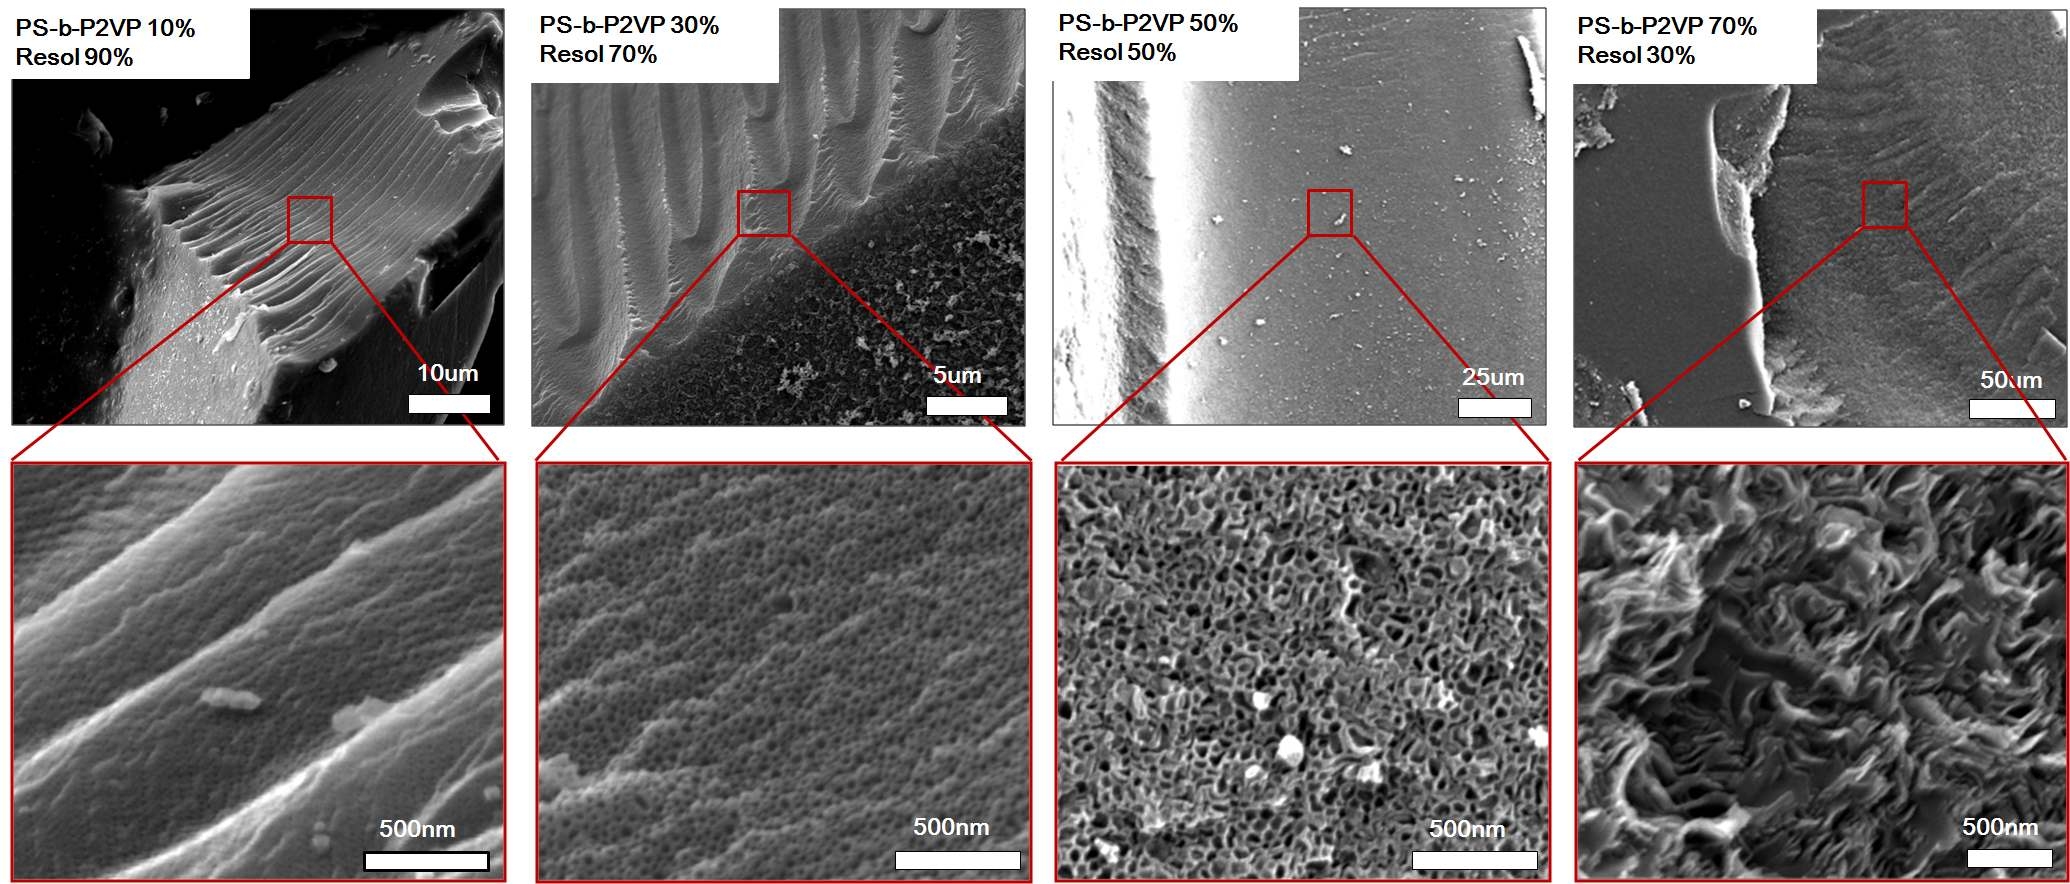 그림 47. 각기 다른 조성비를 갖는 PS-b-P2VP/resol로부터 얻은 탄화 벌크 샘플의 나노구조 전자주사현미경 이미지